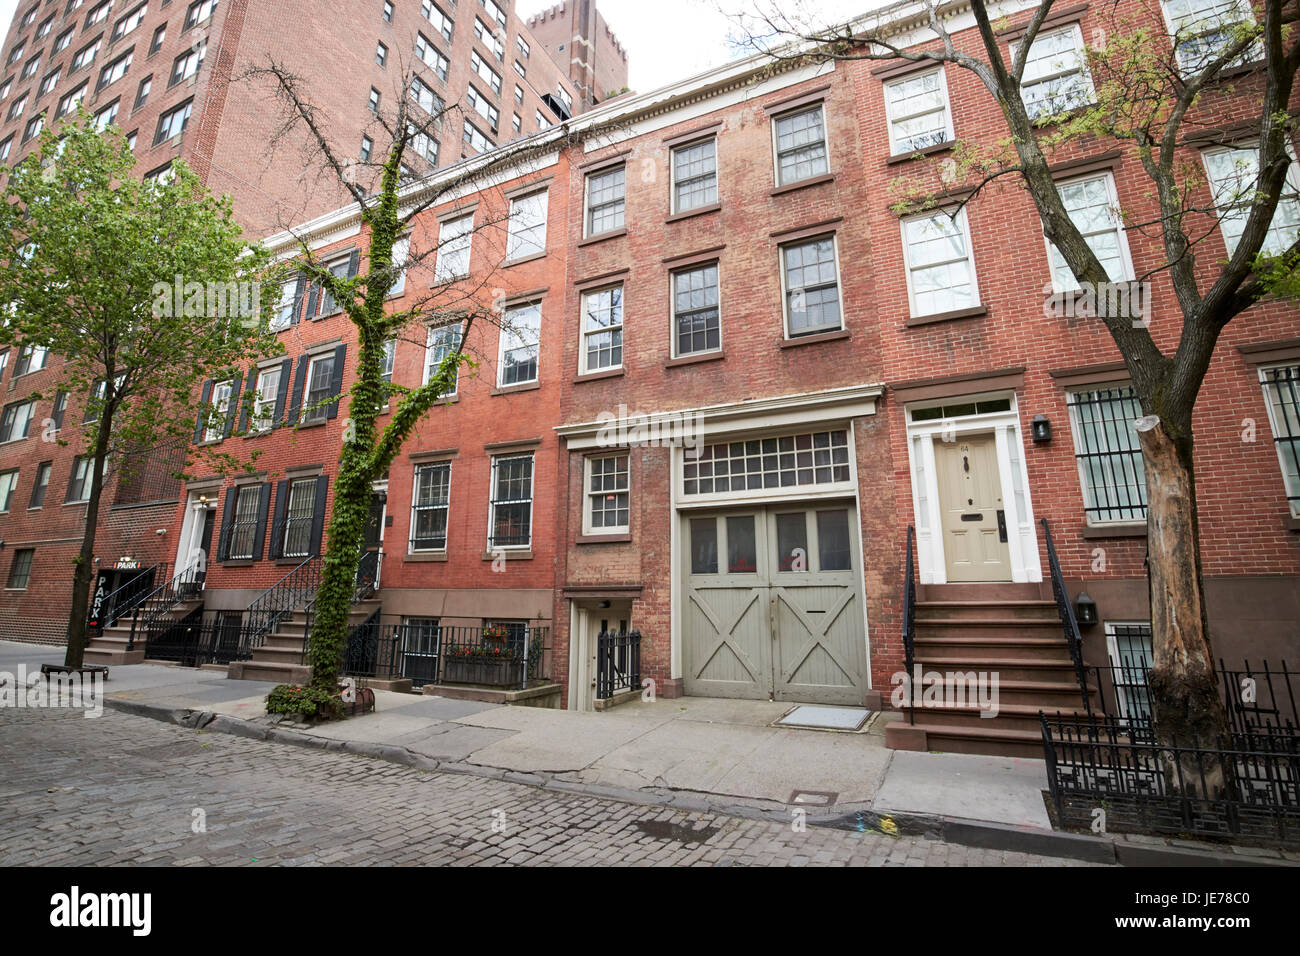 Des maisons de brique rouge avec sous-sol appartements Greenwich village New York City USA Banque D'Images